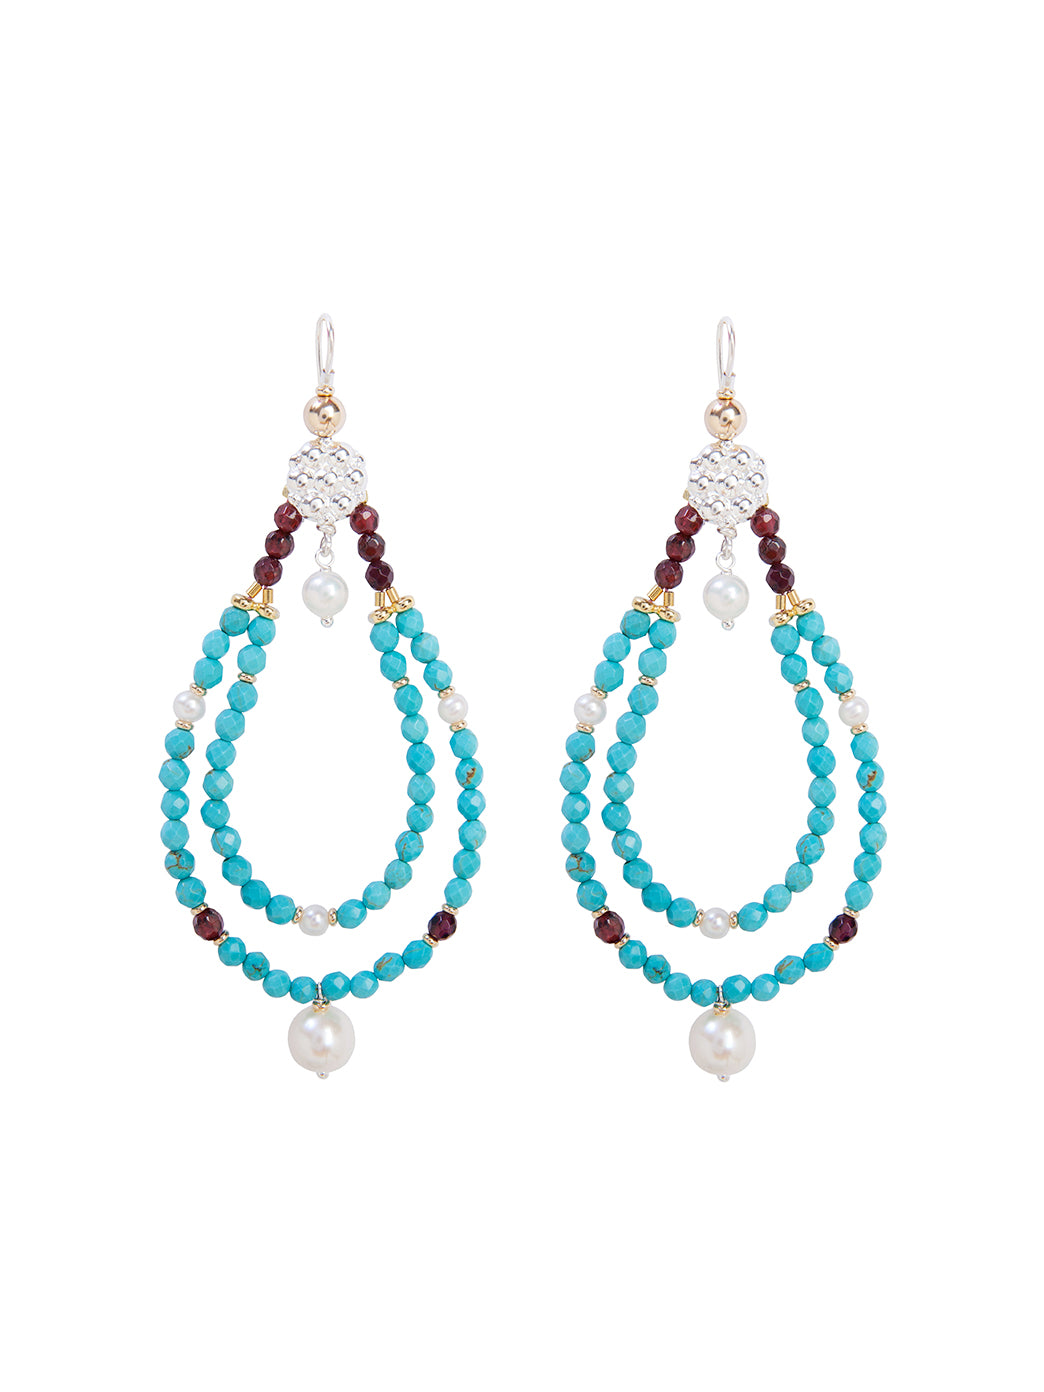 Fiorina Jewellery Rahini Earrings Turquoise